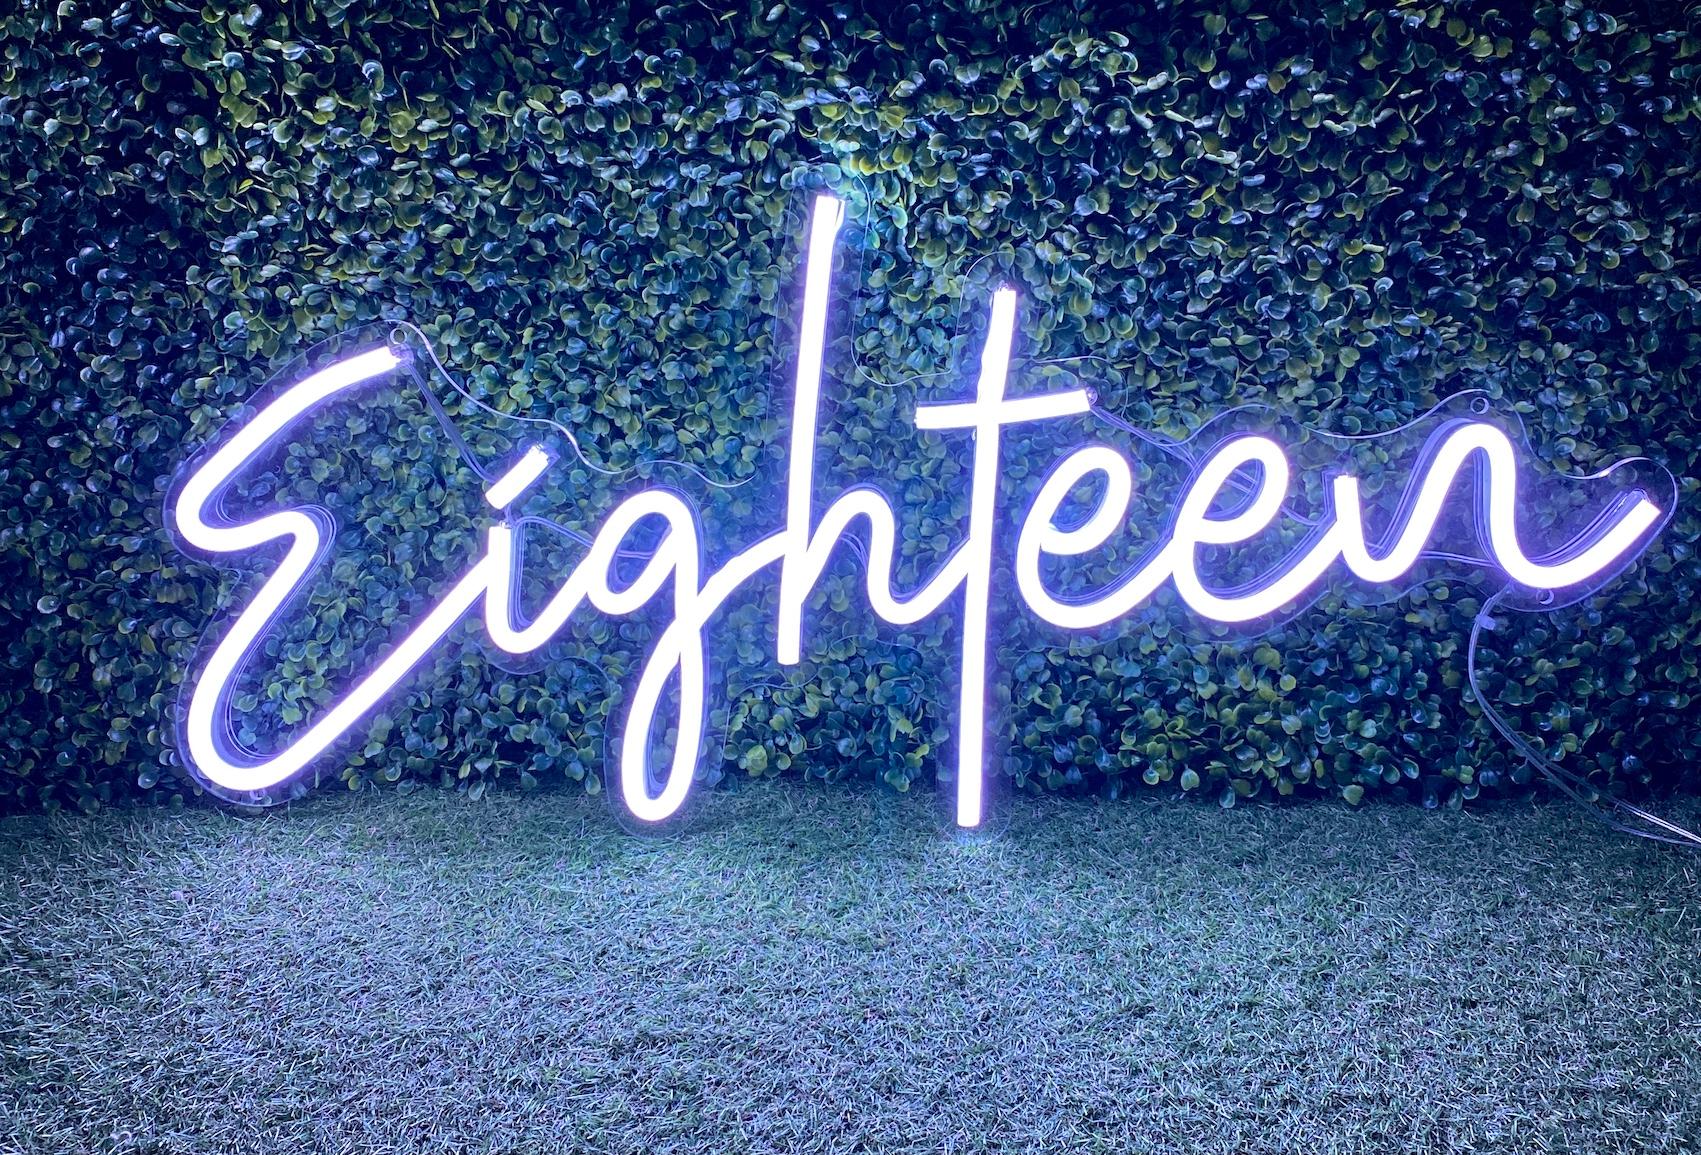 Eighteen neon sign